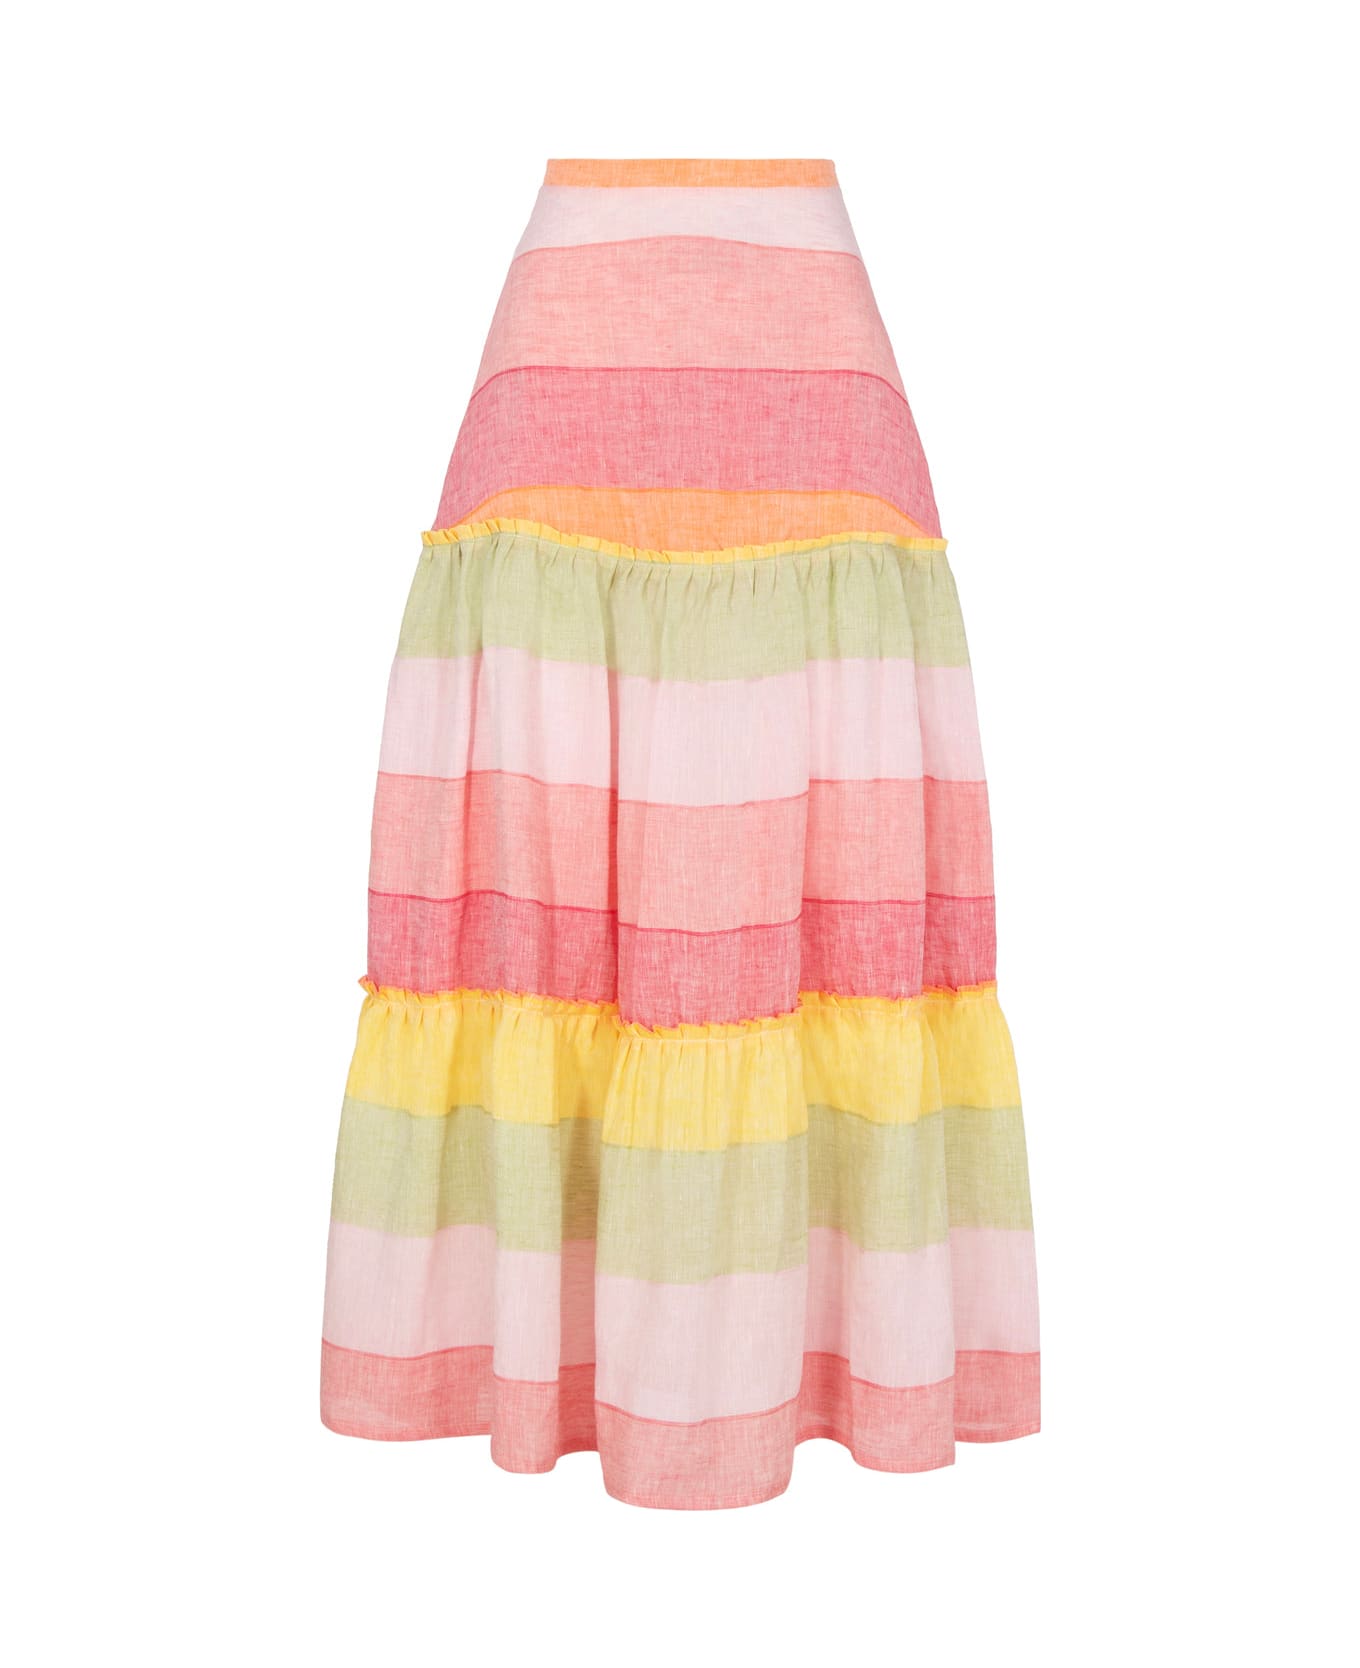 Amotea Charlotte Skirt In Rainbow Linen - Rainbow スカート